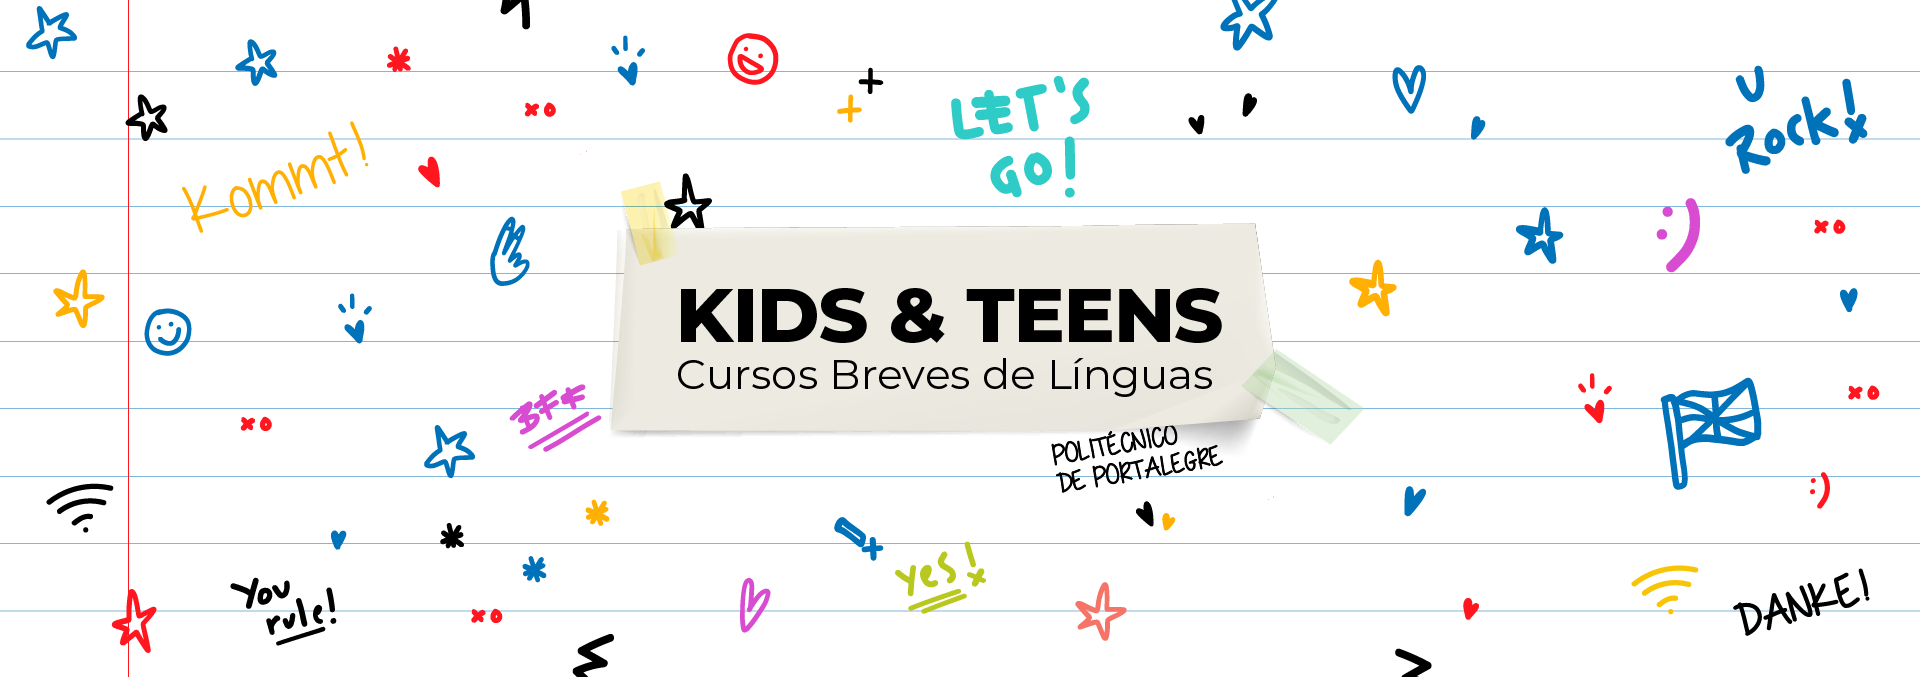 Cursos de verão, , Kids&Teens – Cursos breves de línguas